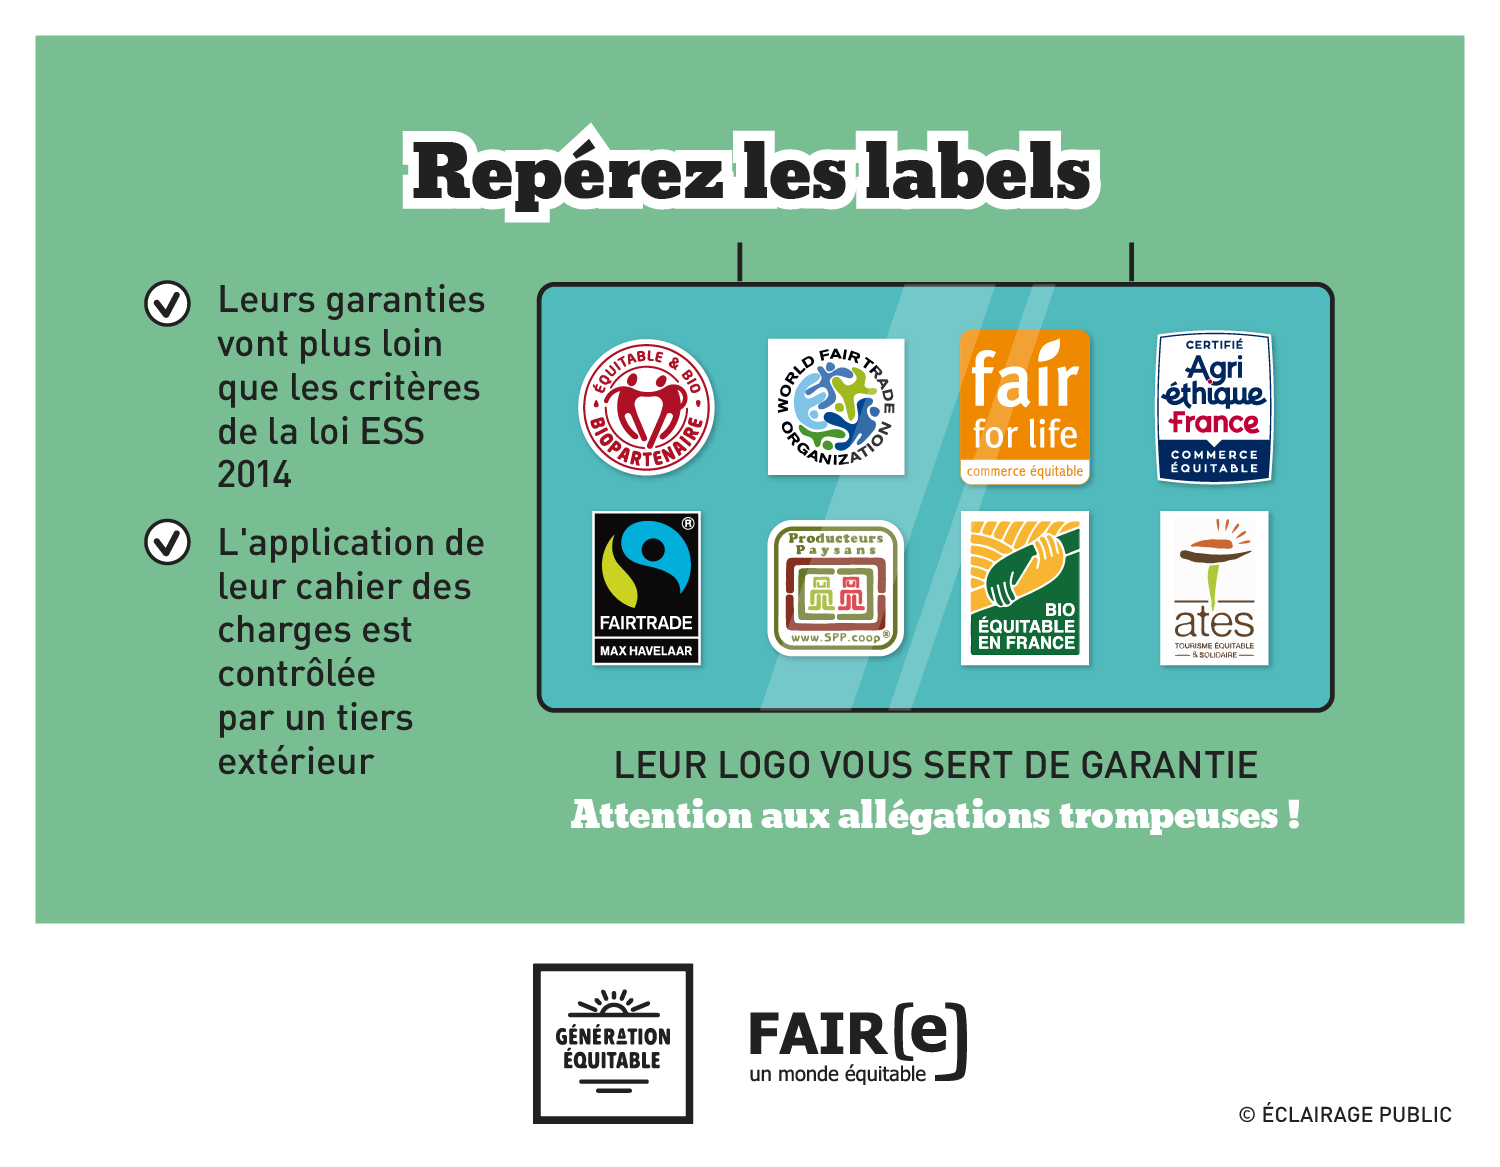 FAIRE-Commerce-equitable-Reperez-les-labels-Infographie-ECLAIRAGE-PUBLIC-1500